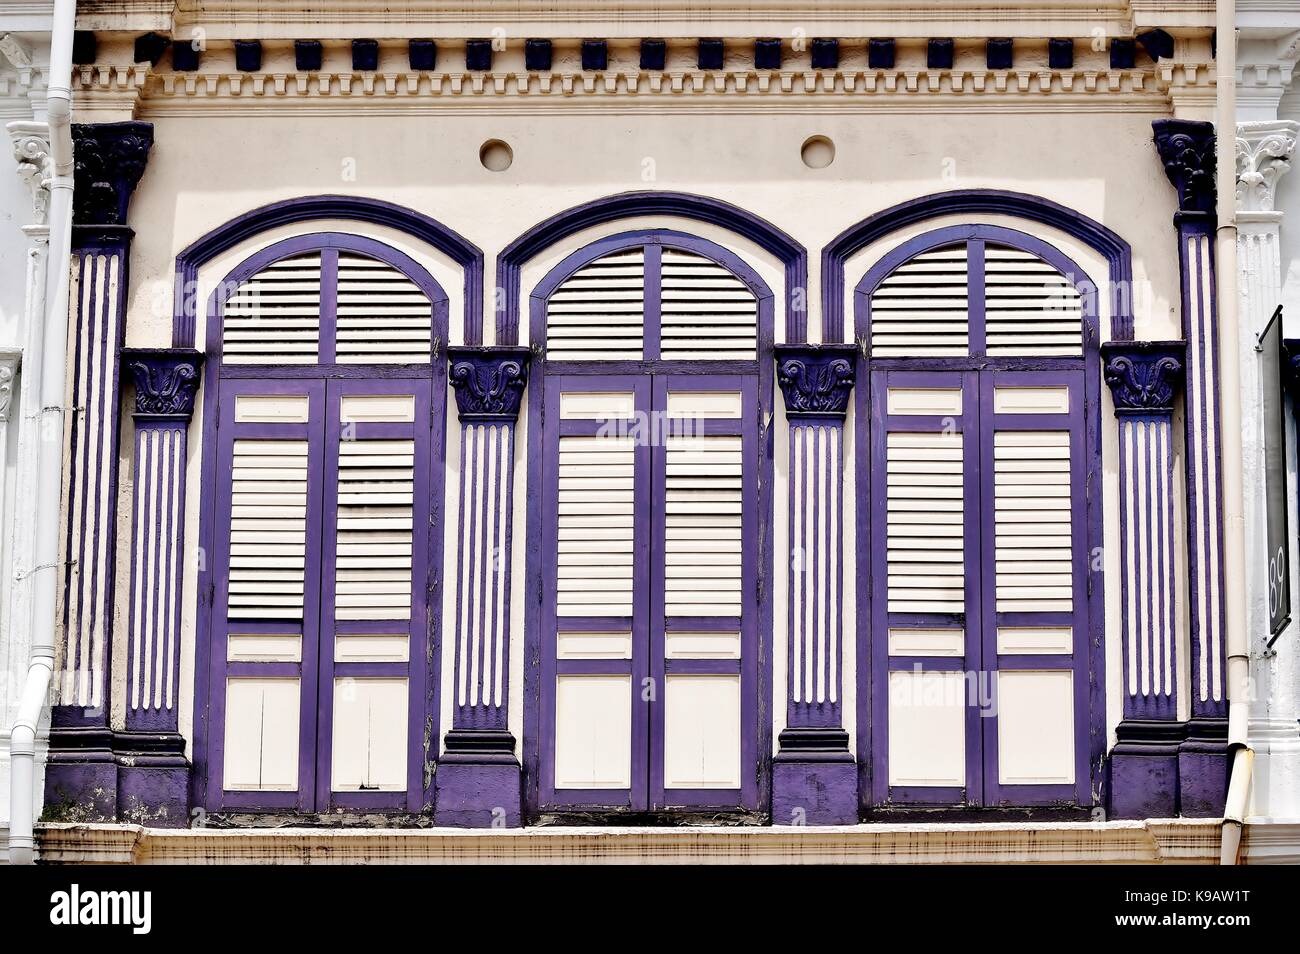 Tienda de Singapur tradicional exterior de la casa con ventanas arqueadas y púrpura y persianas con tablillas de madera blanca en el Duxton distrito histórico. Foto de stock